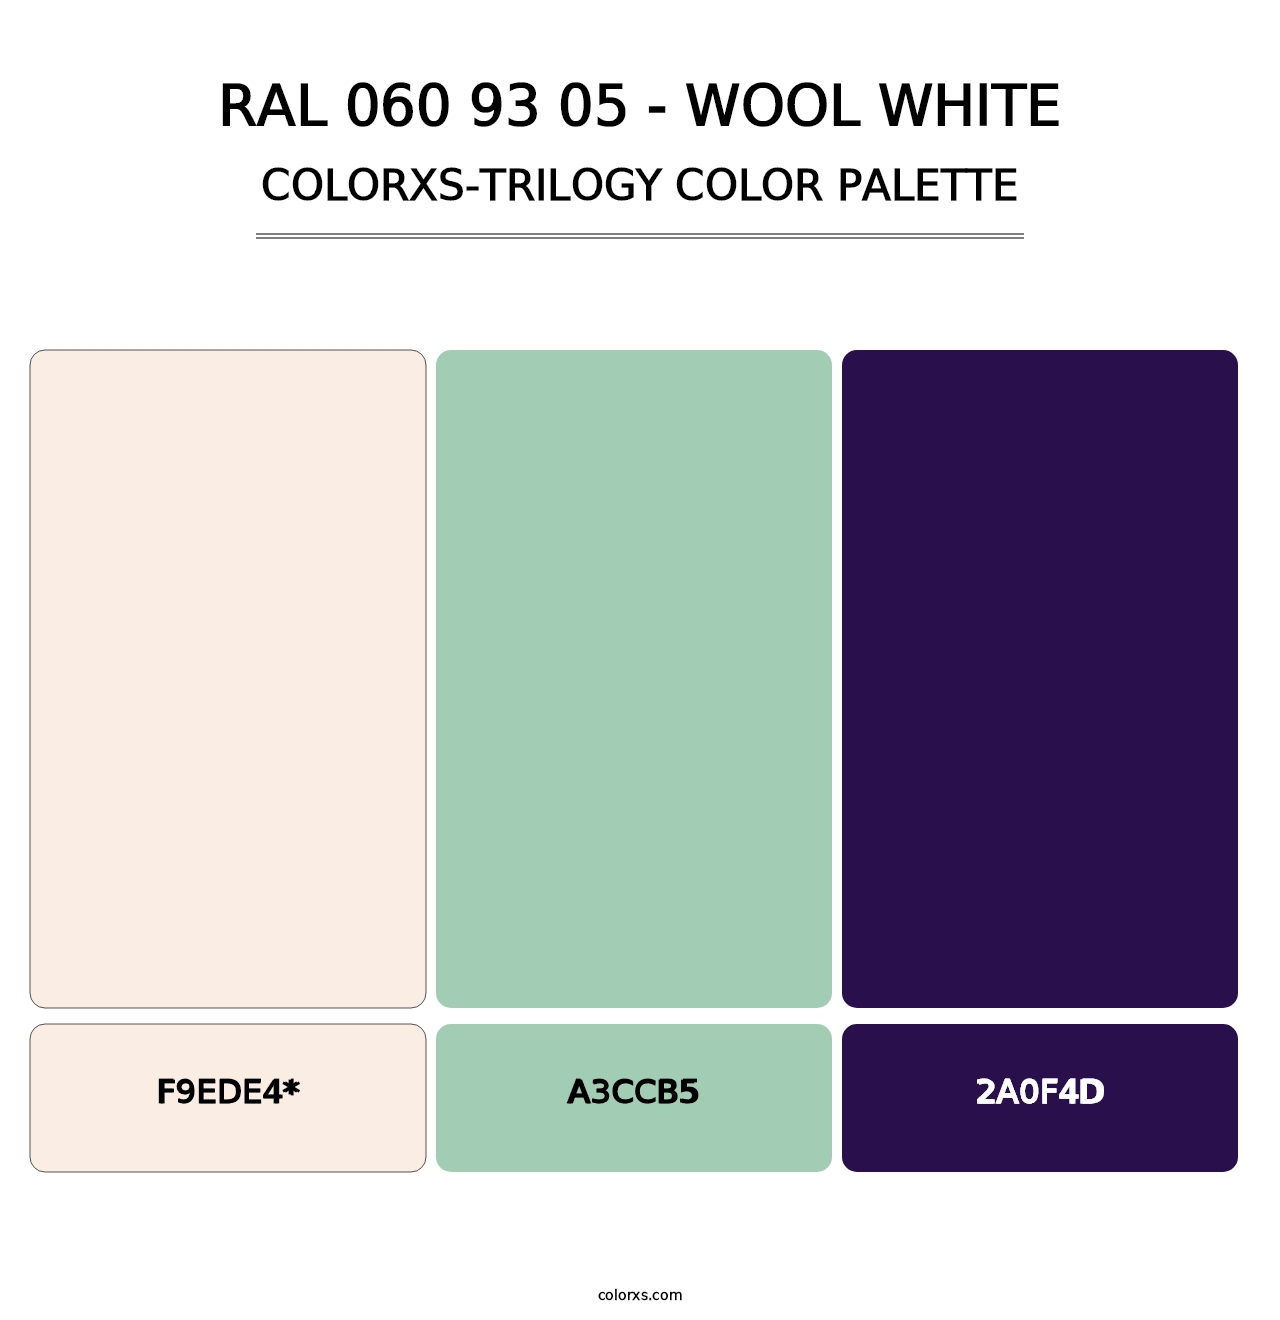 RAL 060 93 05 - Wool White - Colorxs Trilogy Palette